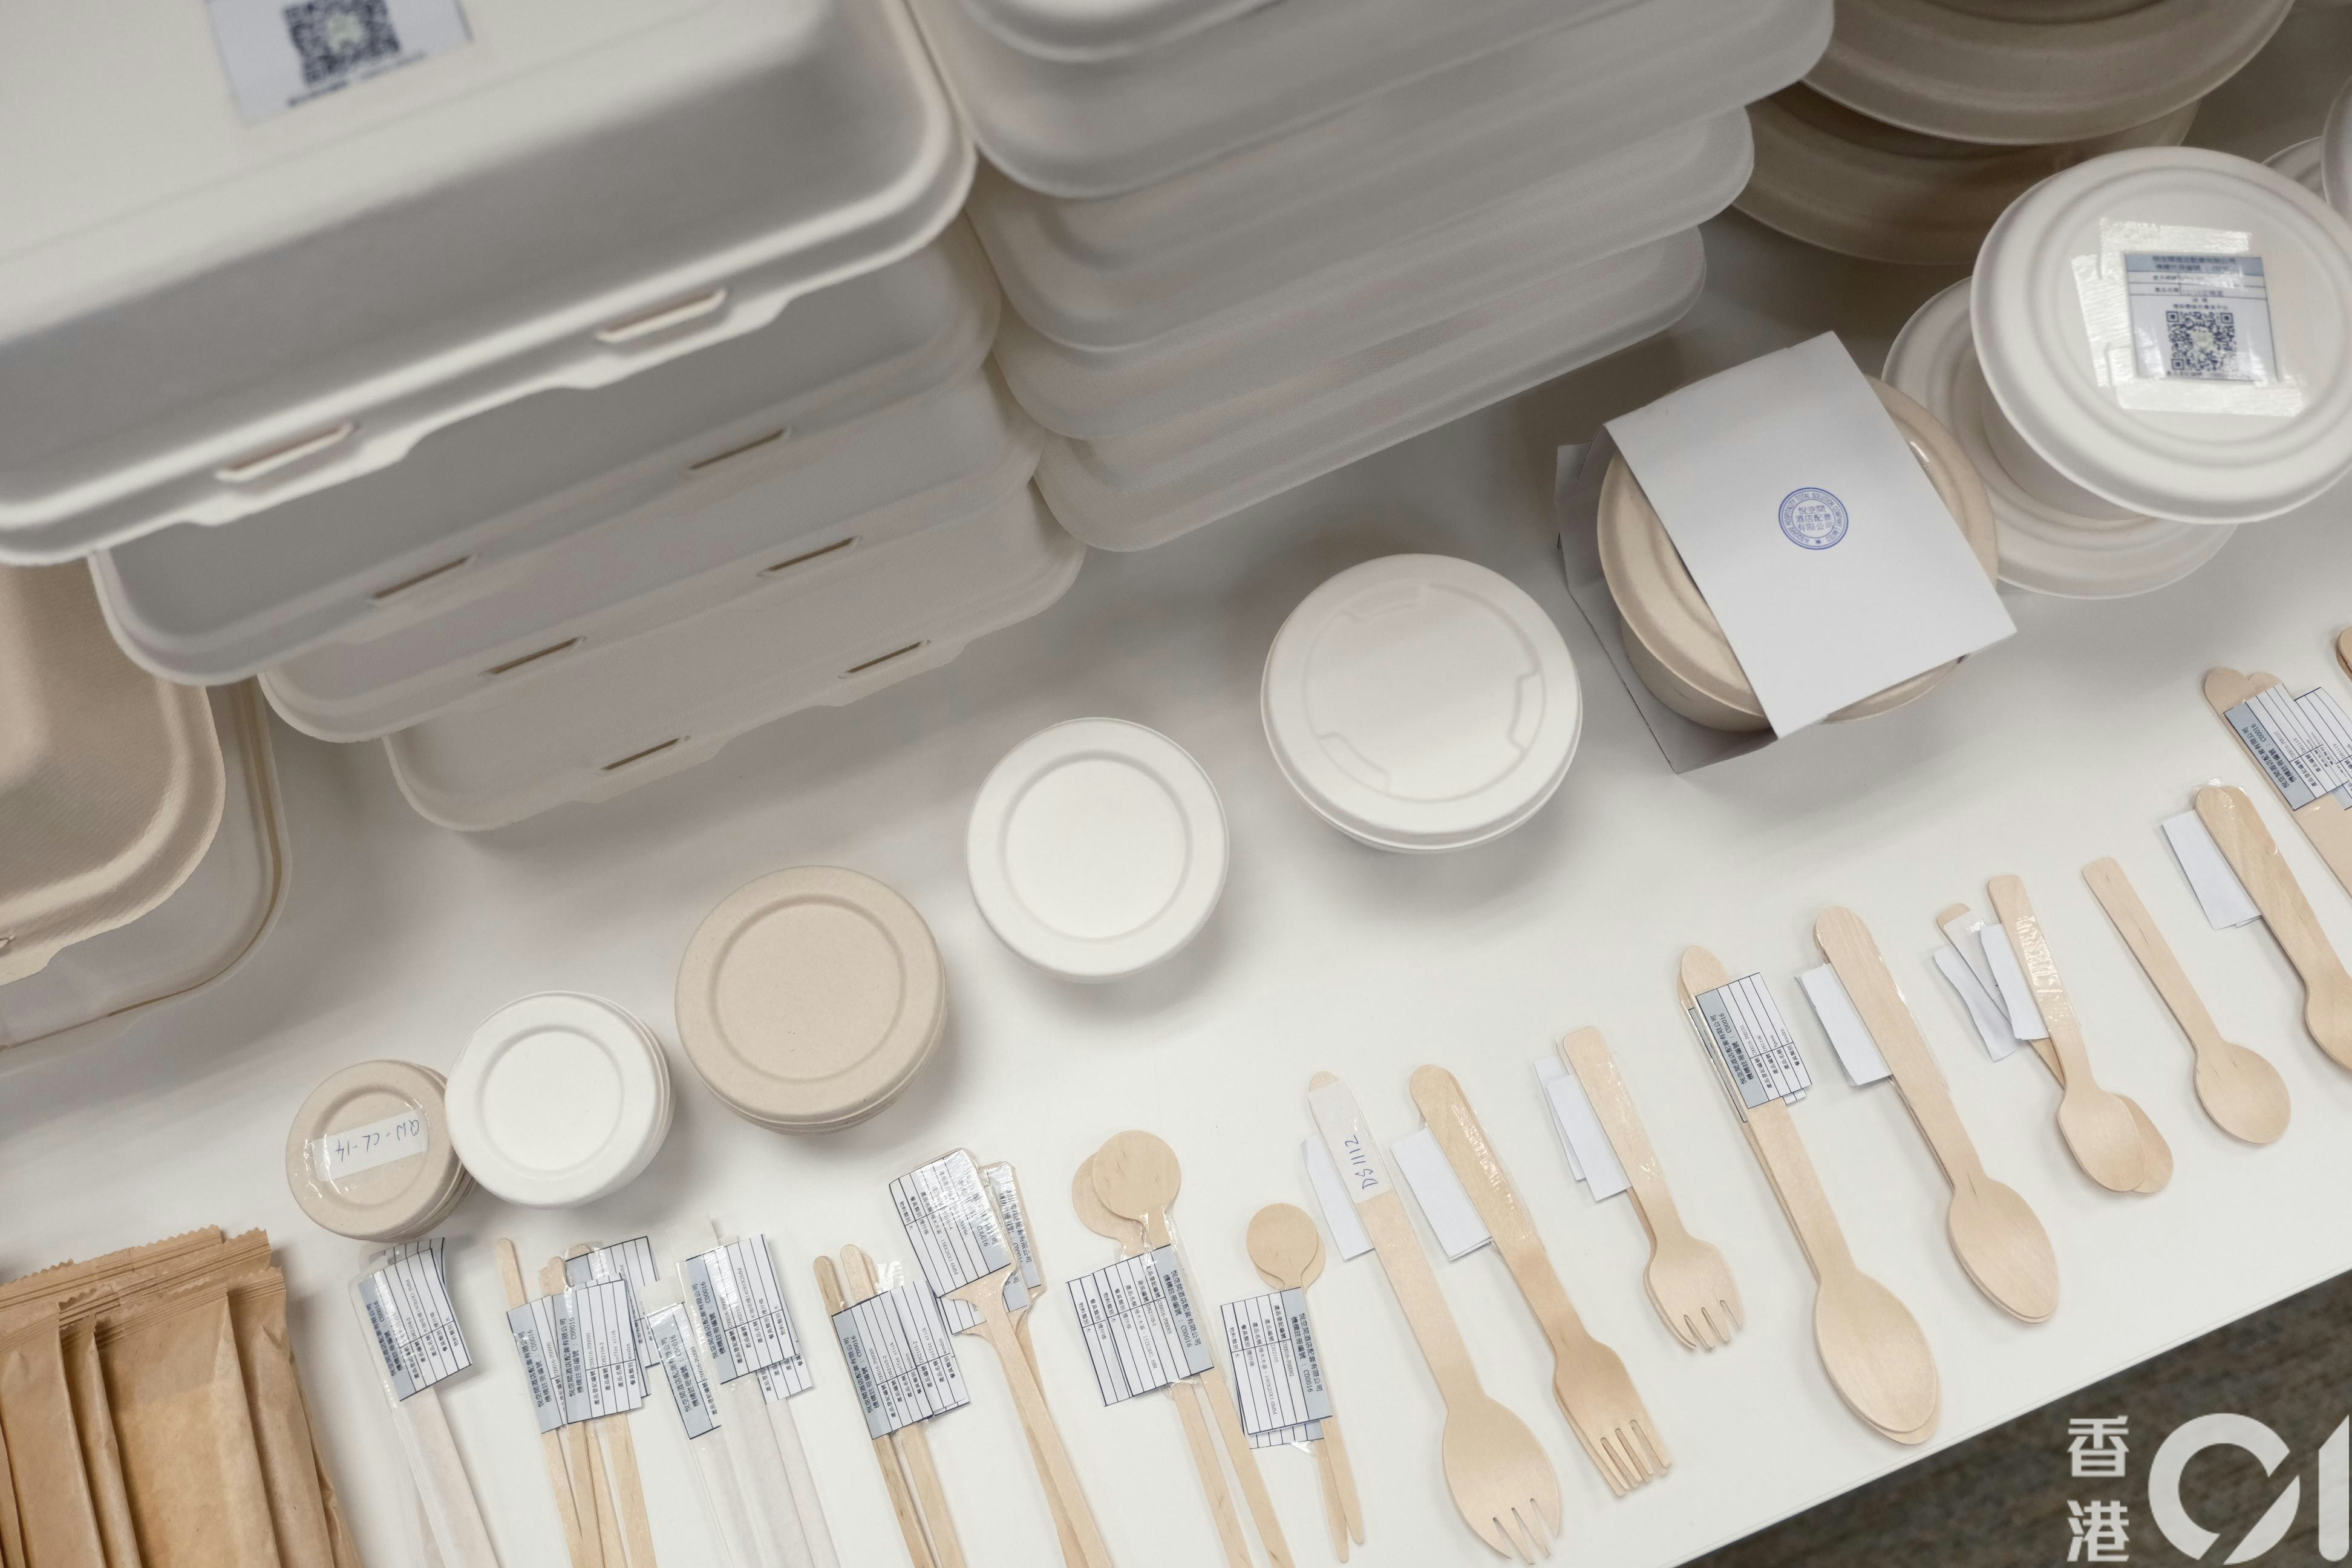 首阶段管制即弃塑胶餐具及产品的法例周一（22日）实施，坊间用作替代的纸餐具大多难以使用引起热议。（卢翊铭摄）